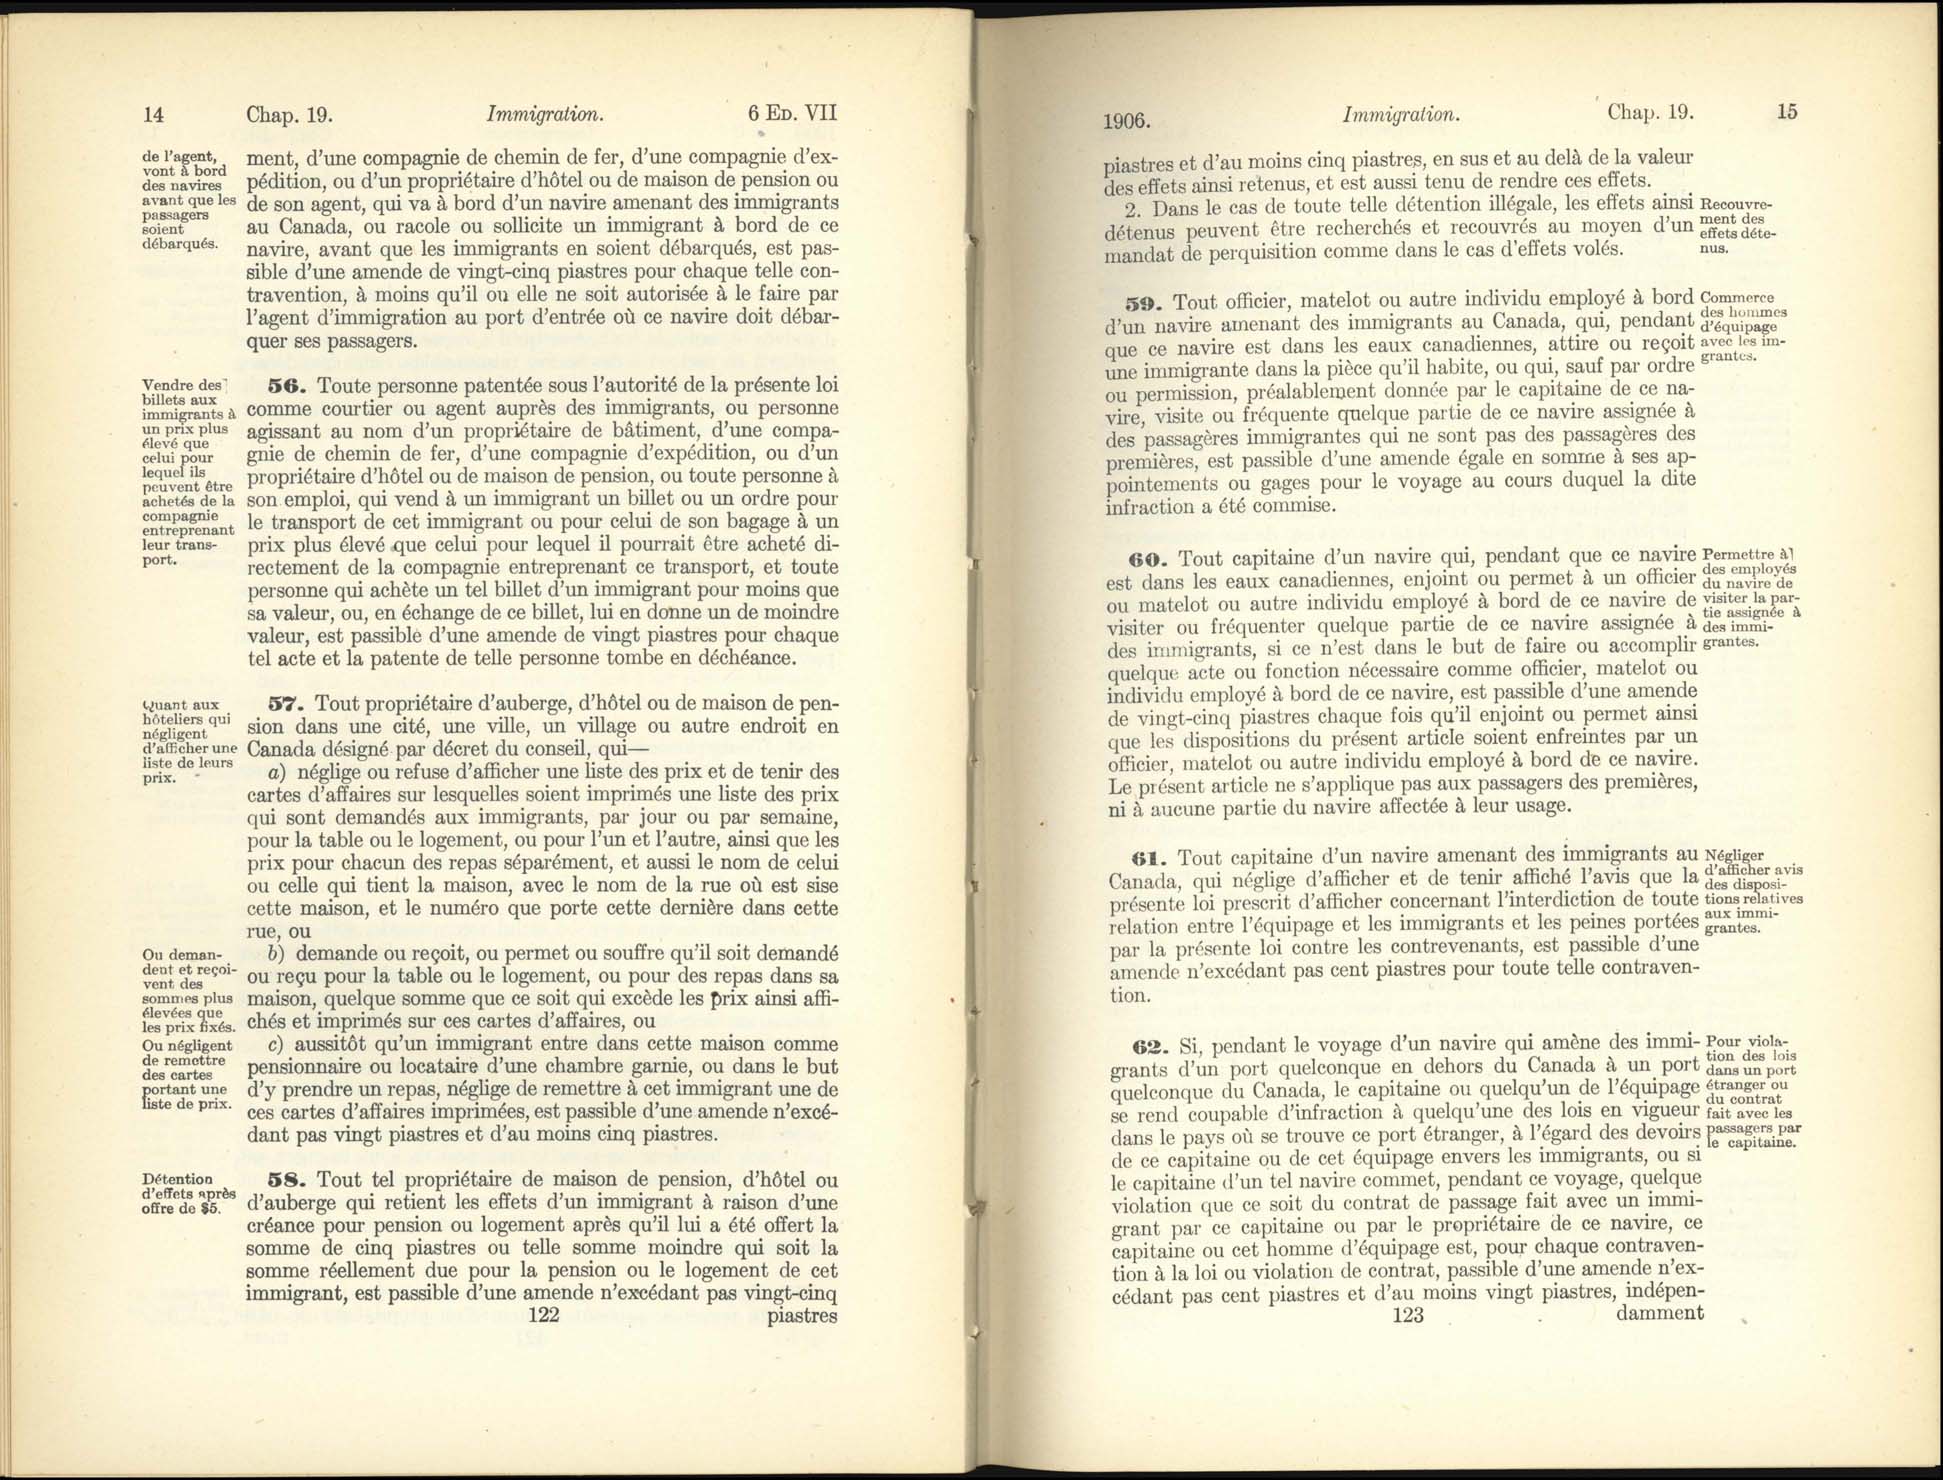 Chap. 19 Page 122, 123 Acte de l’immigration, 1906